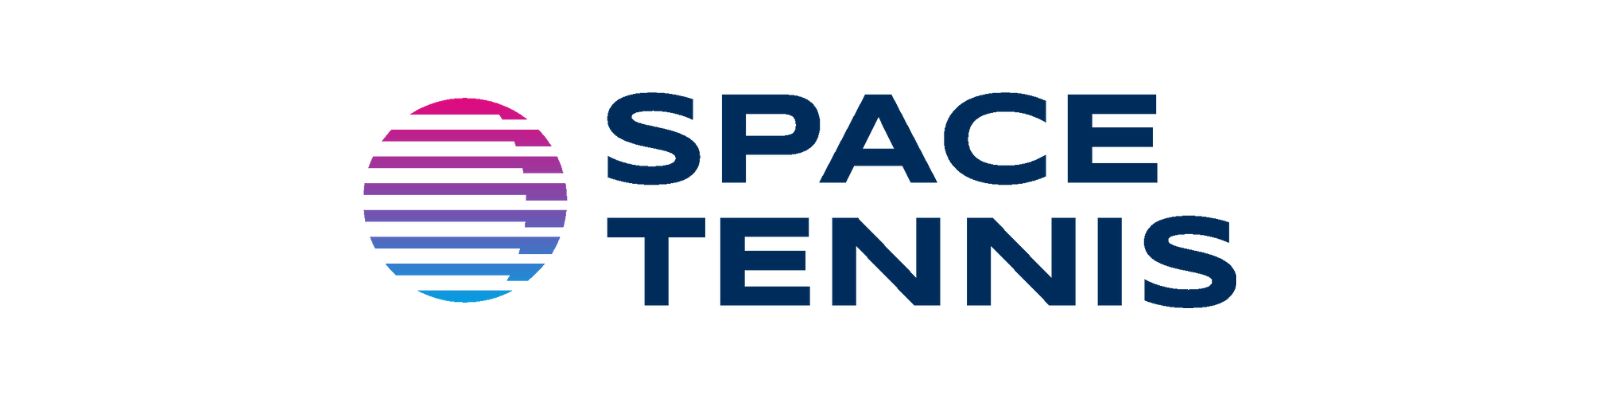 Space Tennis é confiável? Não compre antes de Ler!